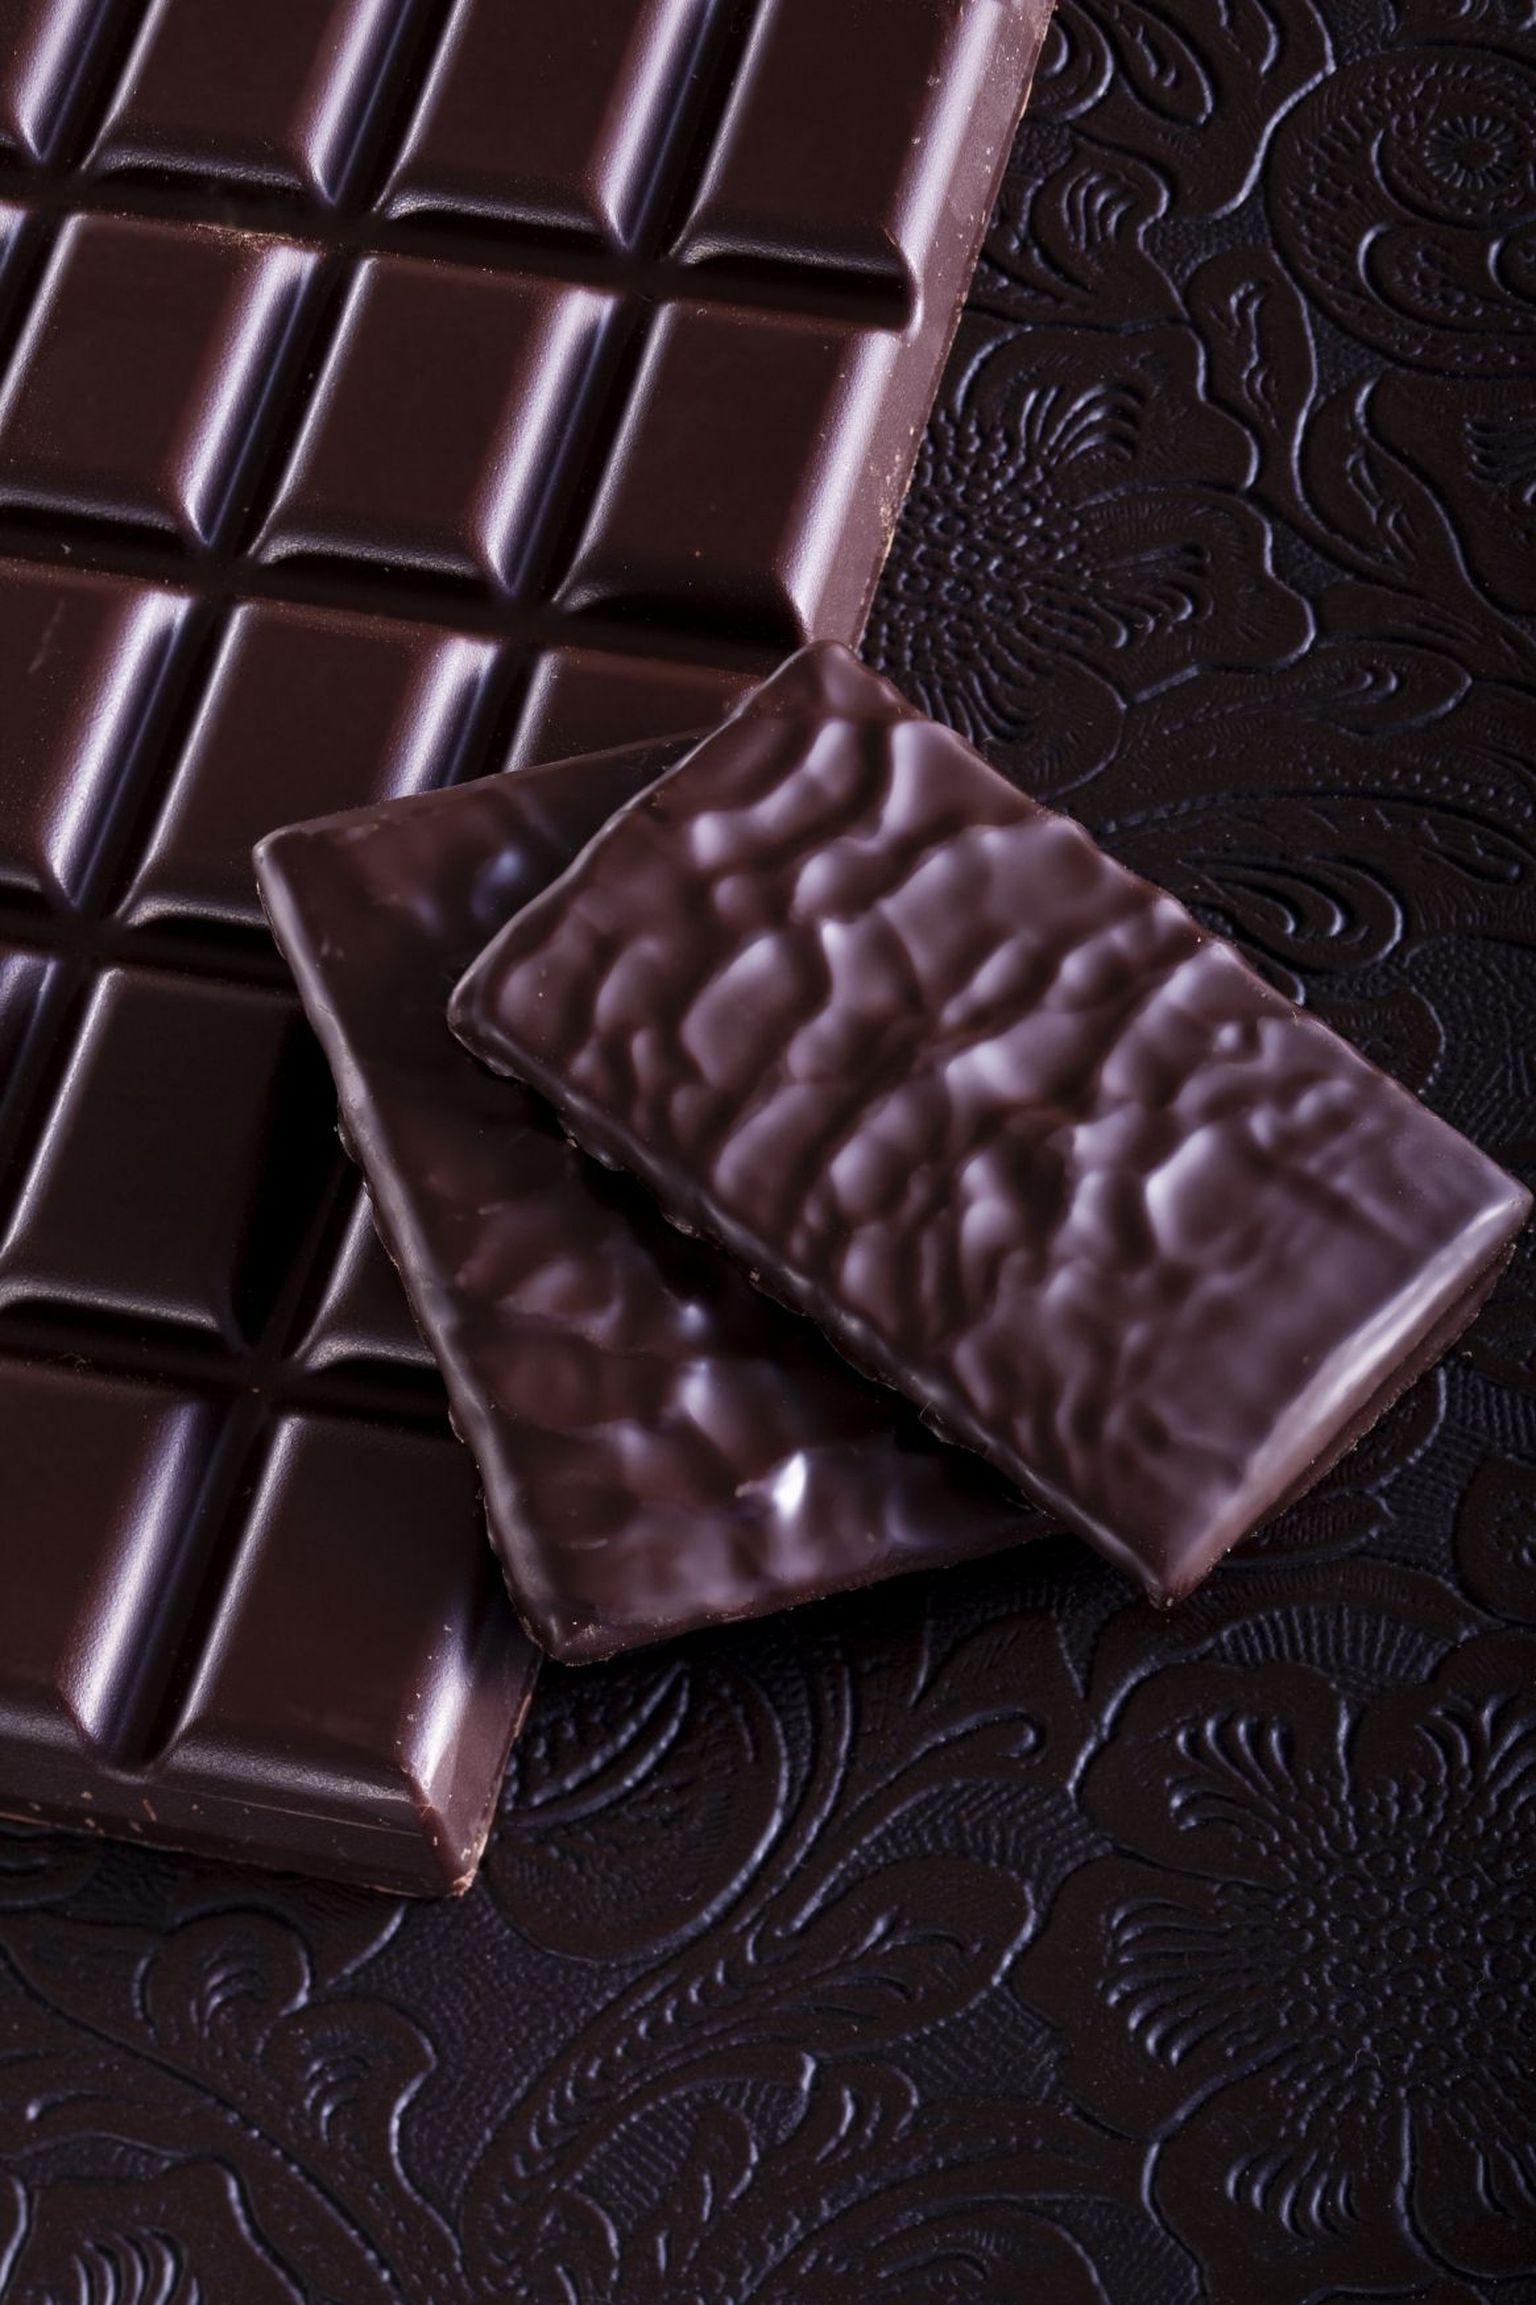 Tume šokolaad: peale heaoluhormoonide saad tumedast šokolaadist ka aintioksüdante.